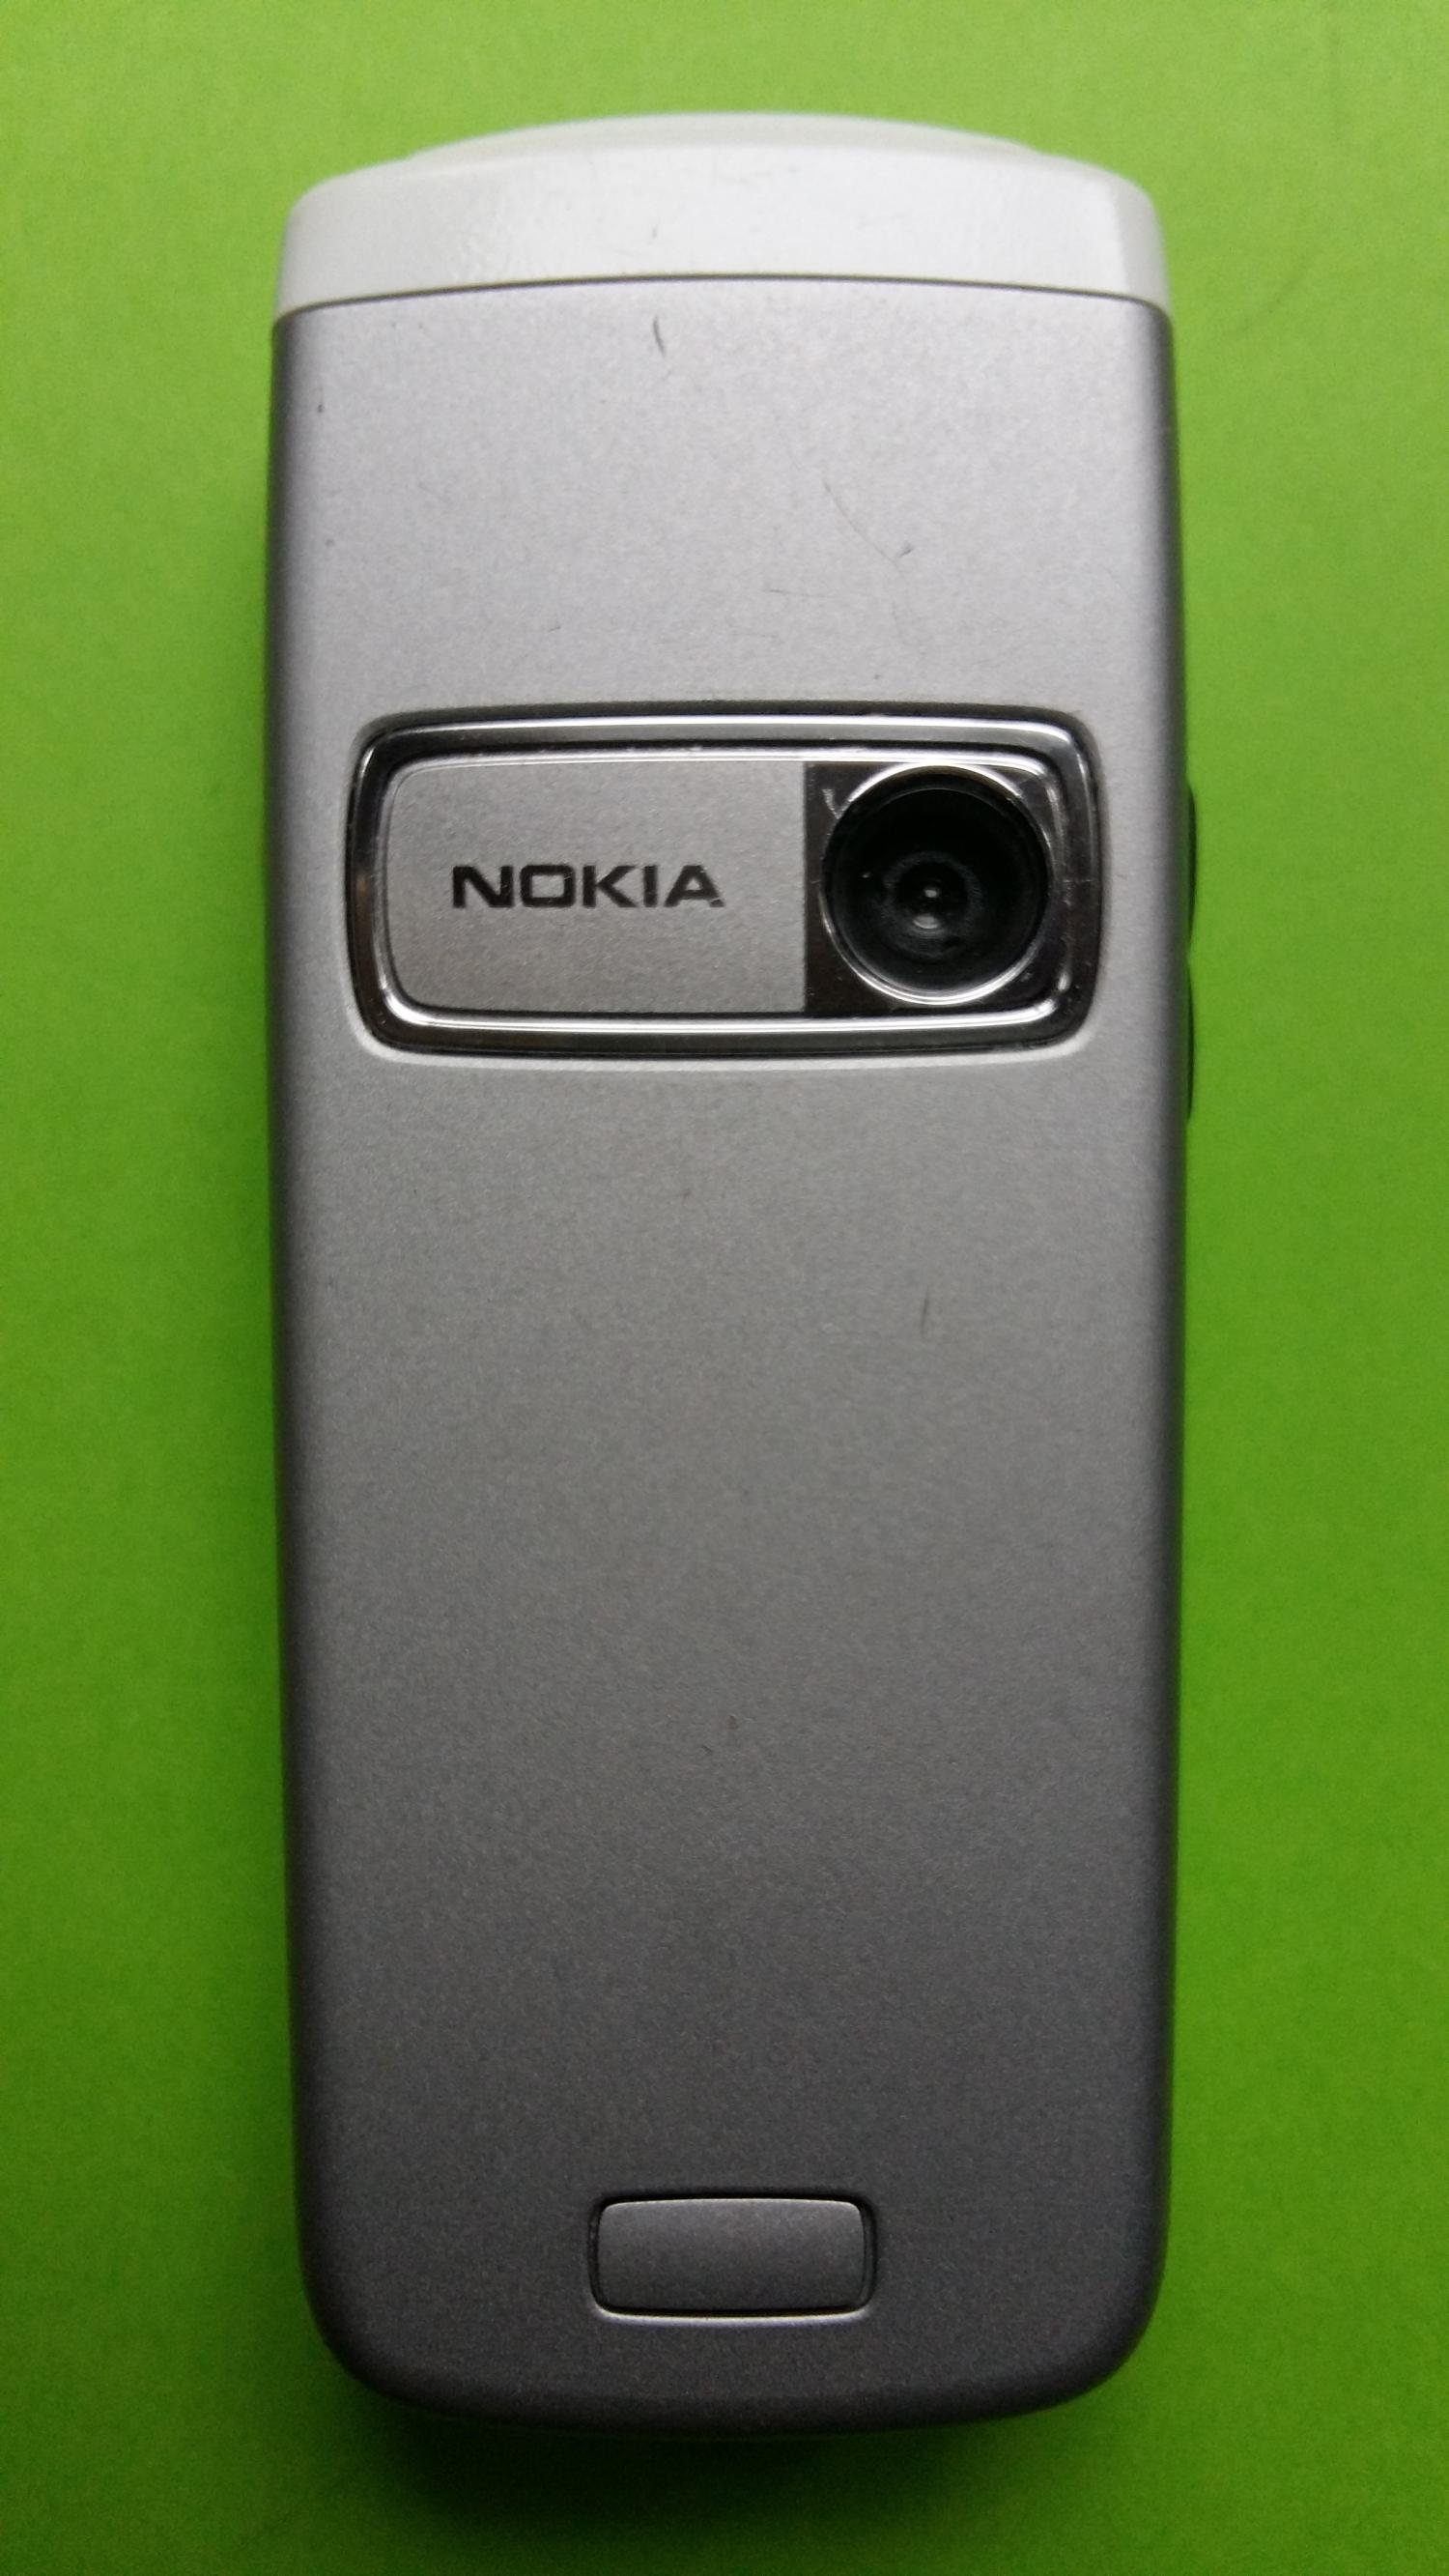 image-7307036-Nokia 6020 (2)2.jpg